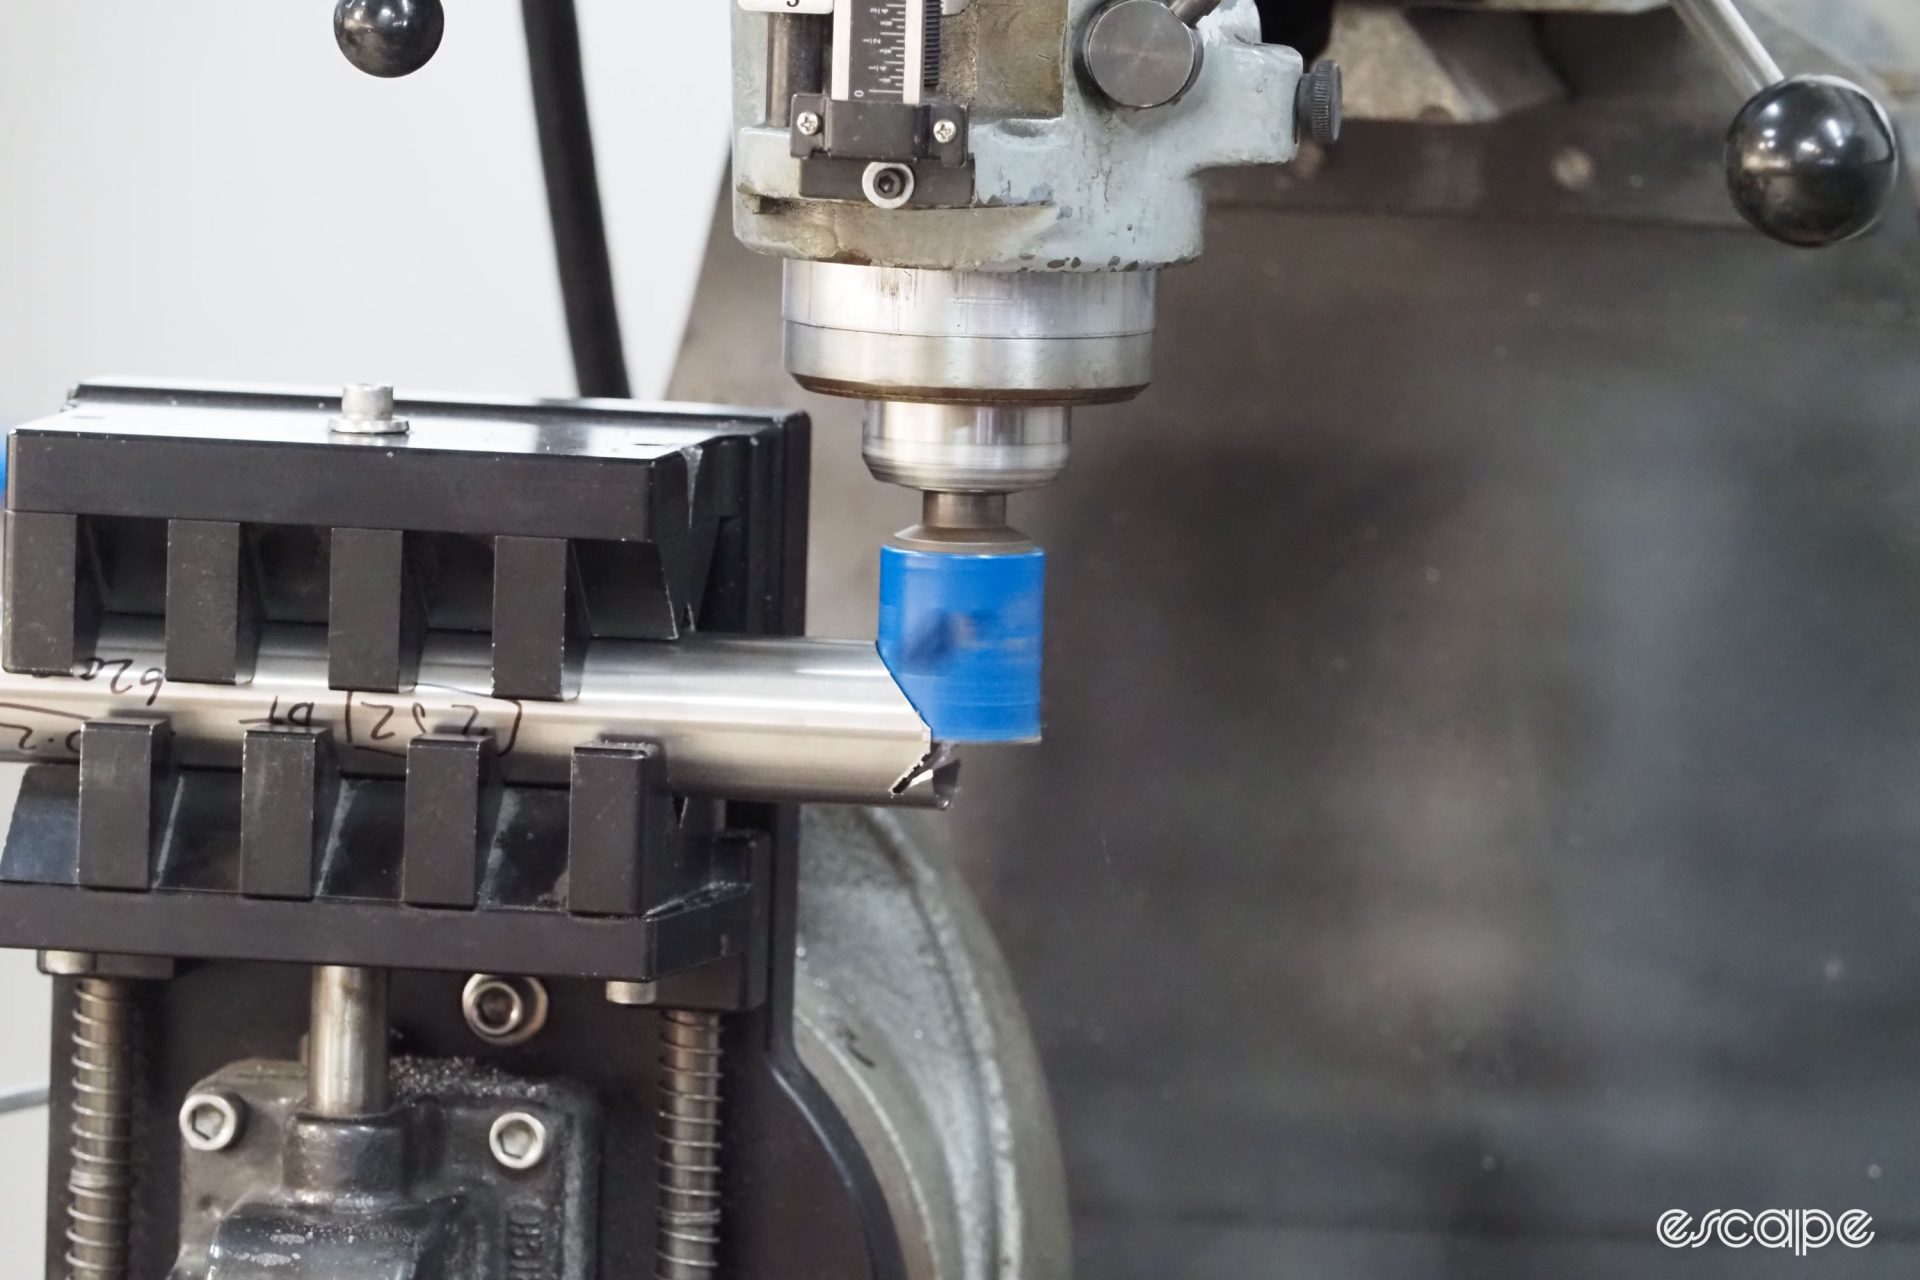 An electric machine tool cuts a precise miter into a titanium frame.